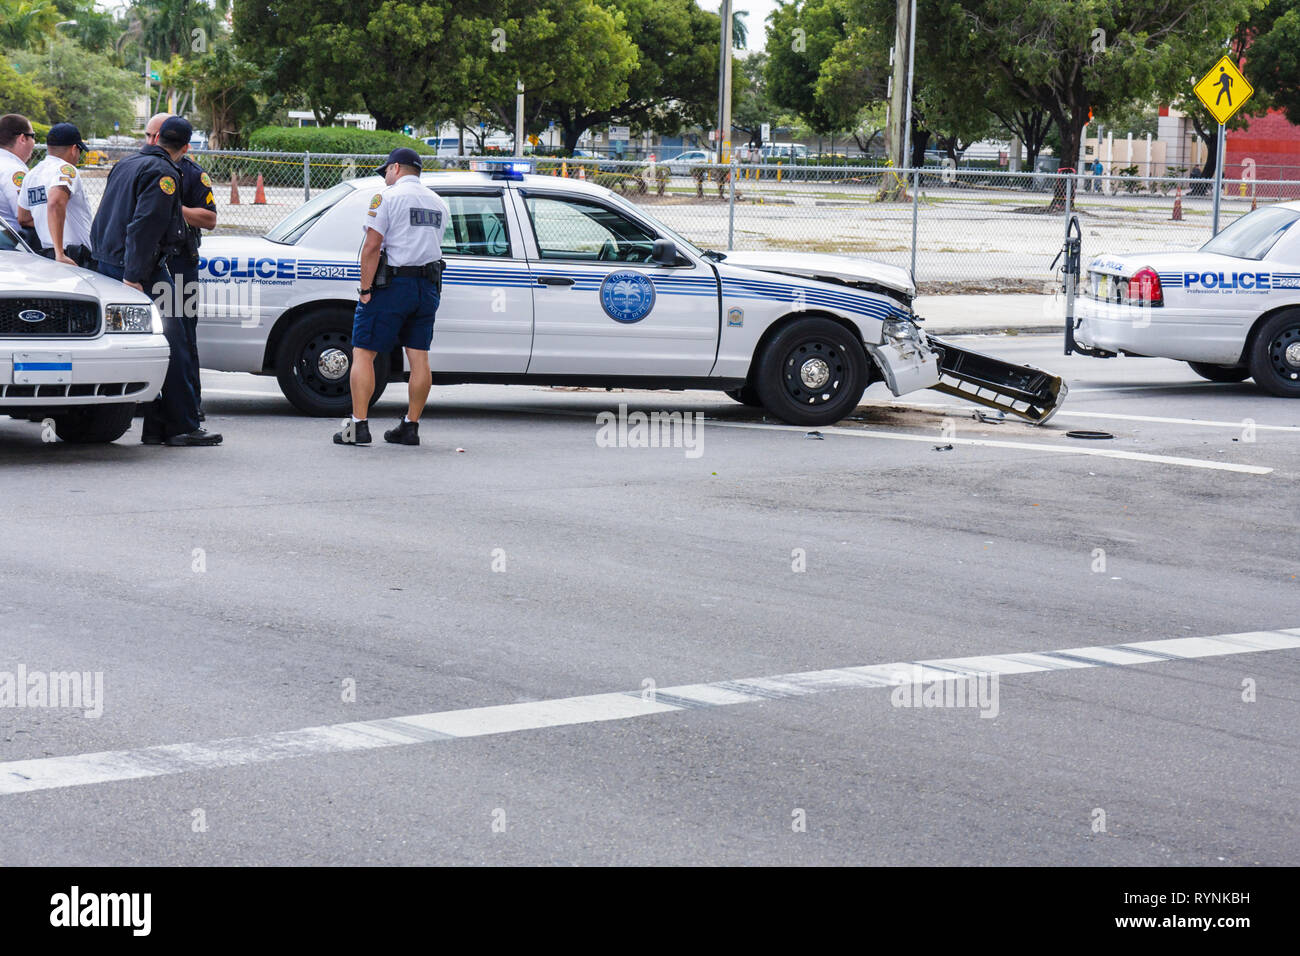 Miami Florida,City of Miami police Department,car,police croiseur,collision,accident,aile,homme hommes,policier,officier,FL090208006 Banque D'Images